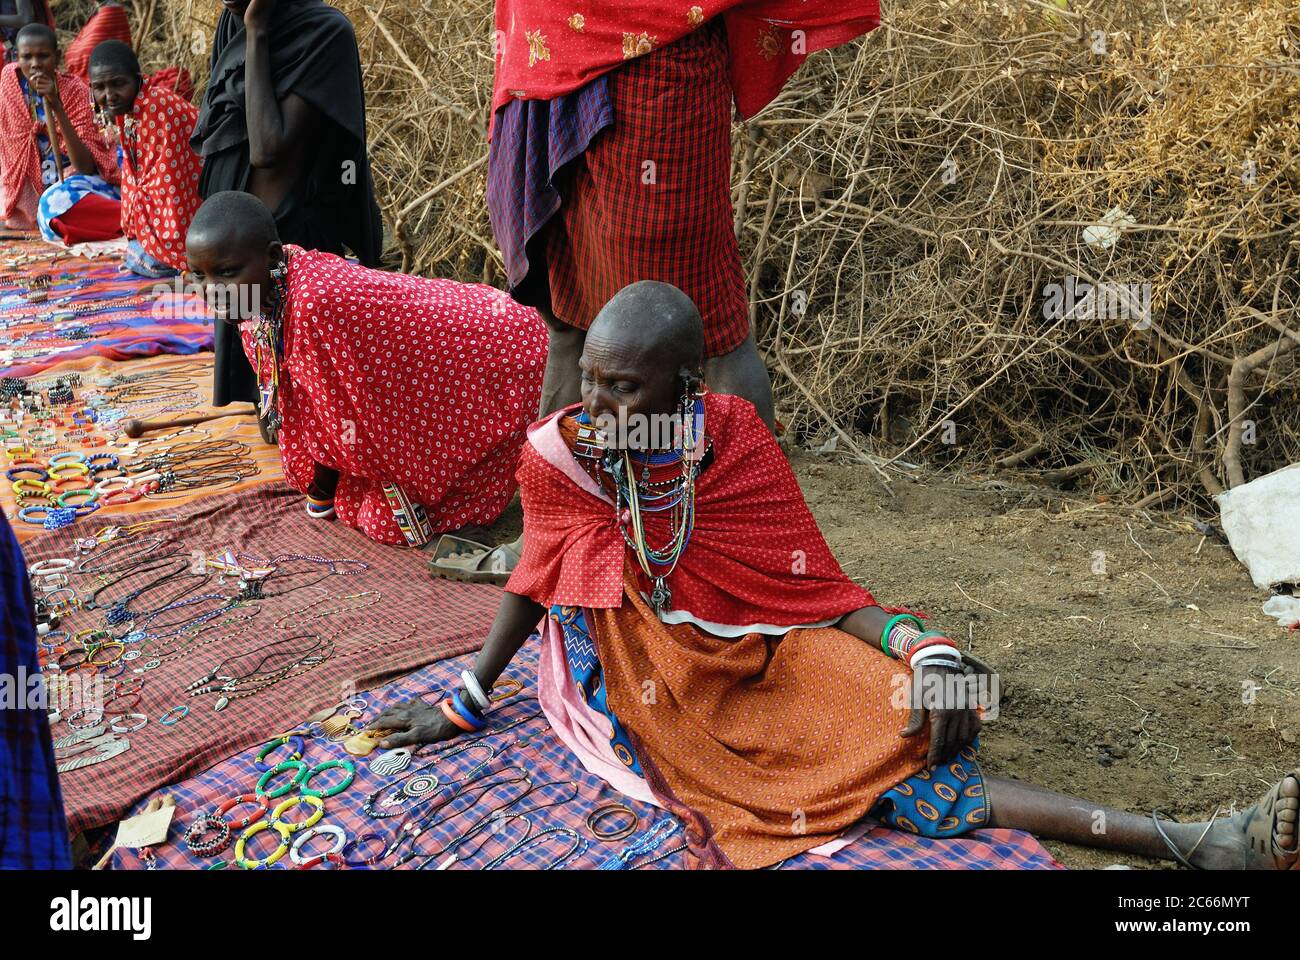 MASAI MARA, KENYA - 23 AGOSTO 2010: I venditori locali della tribù Masai offrono merci sul mercato. Accessori tradizionali fatti a mano molto popolare souvenir tra Foto Stock